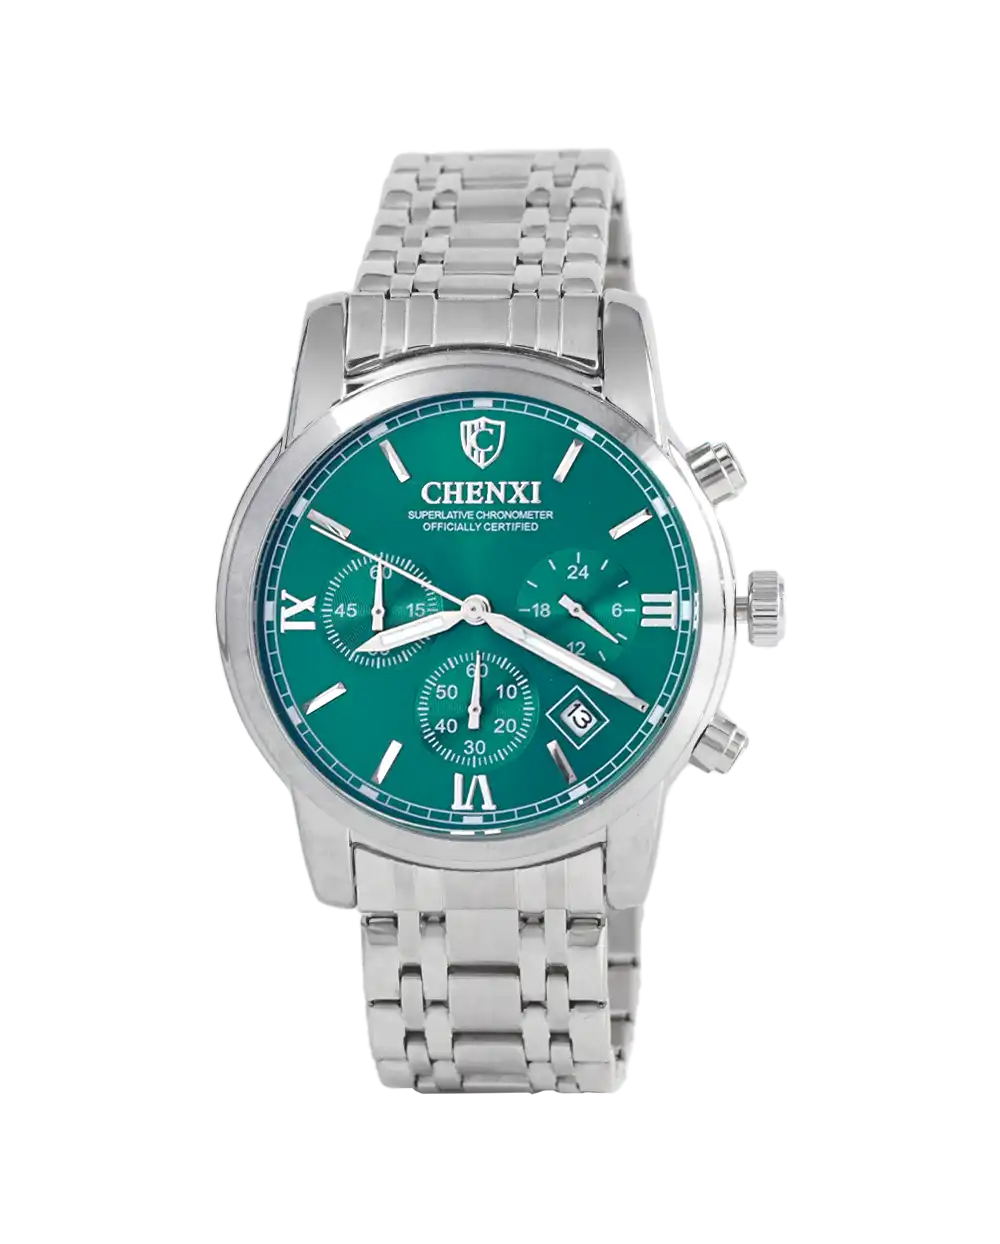 خرید ساعت مچی مردانه چانگ شی CHENXI مدل 1663 صفحه سبز با بهترین قیمت به همراه جعبه ی شیک و خاص و ارسال رایگان | ساعت صفحه سبز مردانه